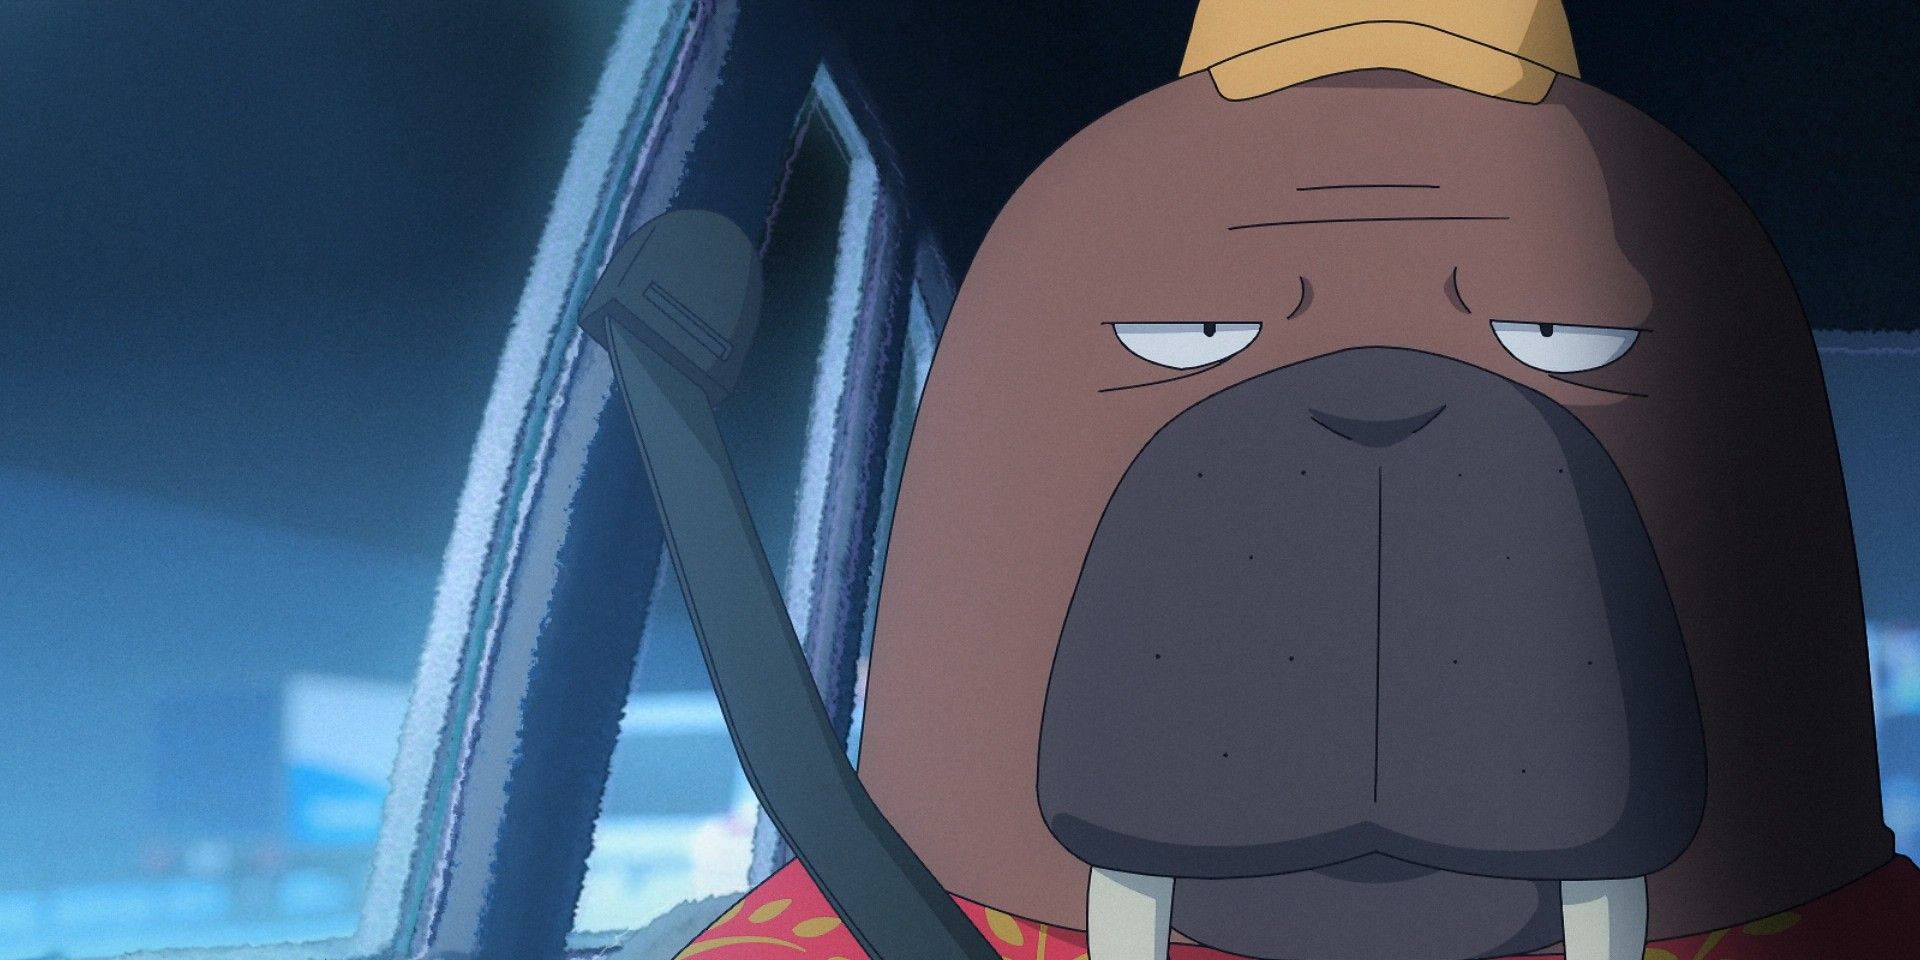 walrus hiroshi odokawa in odd taxi